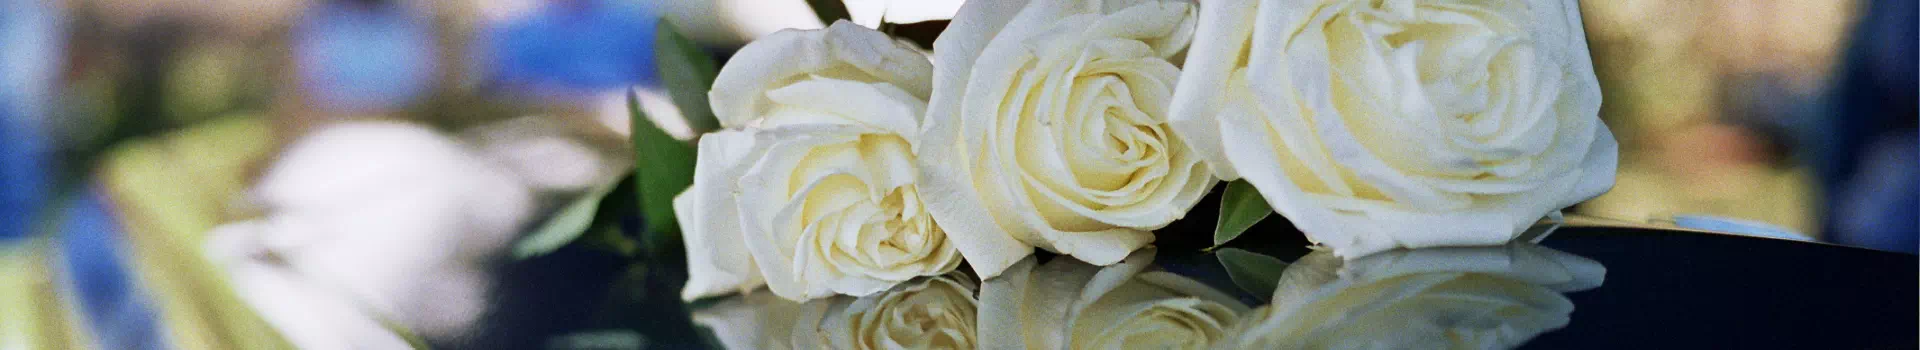 białe róże na trumnie